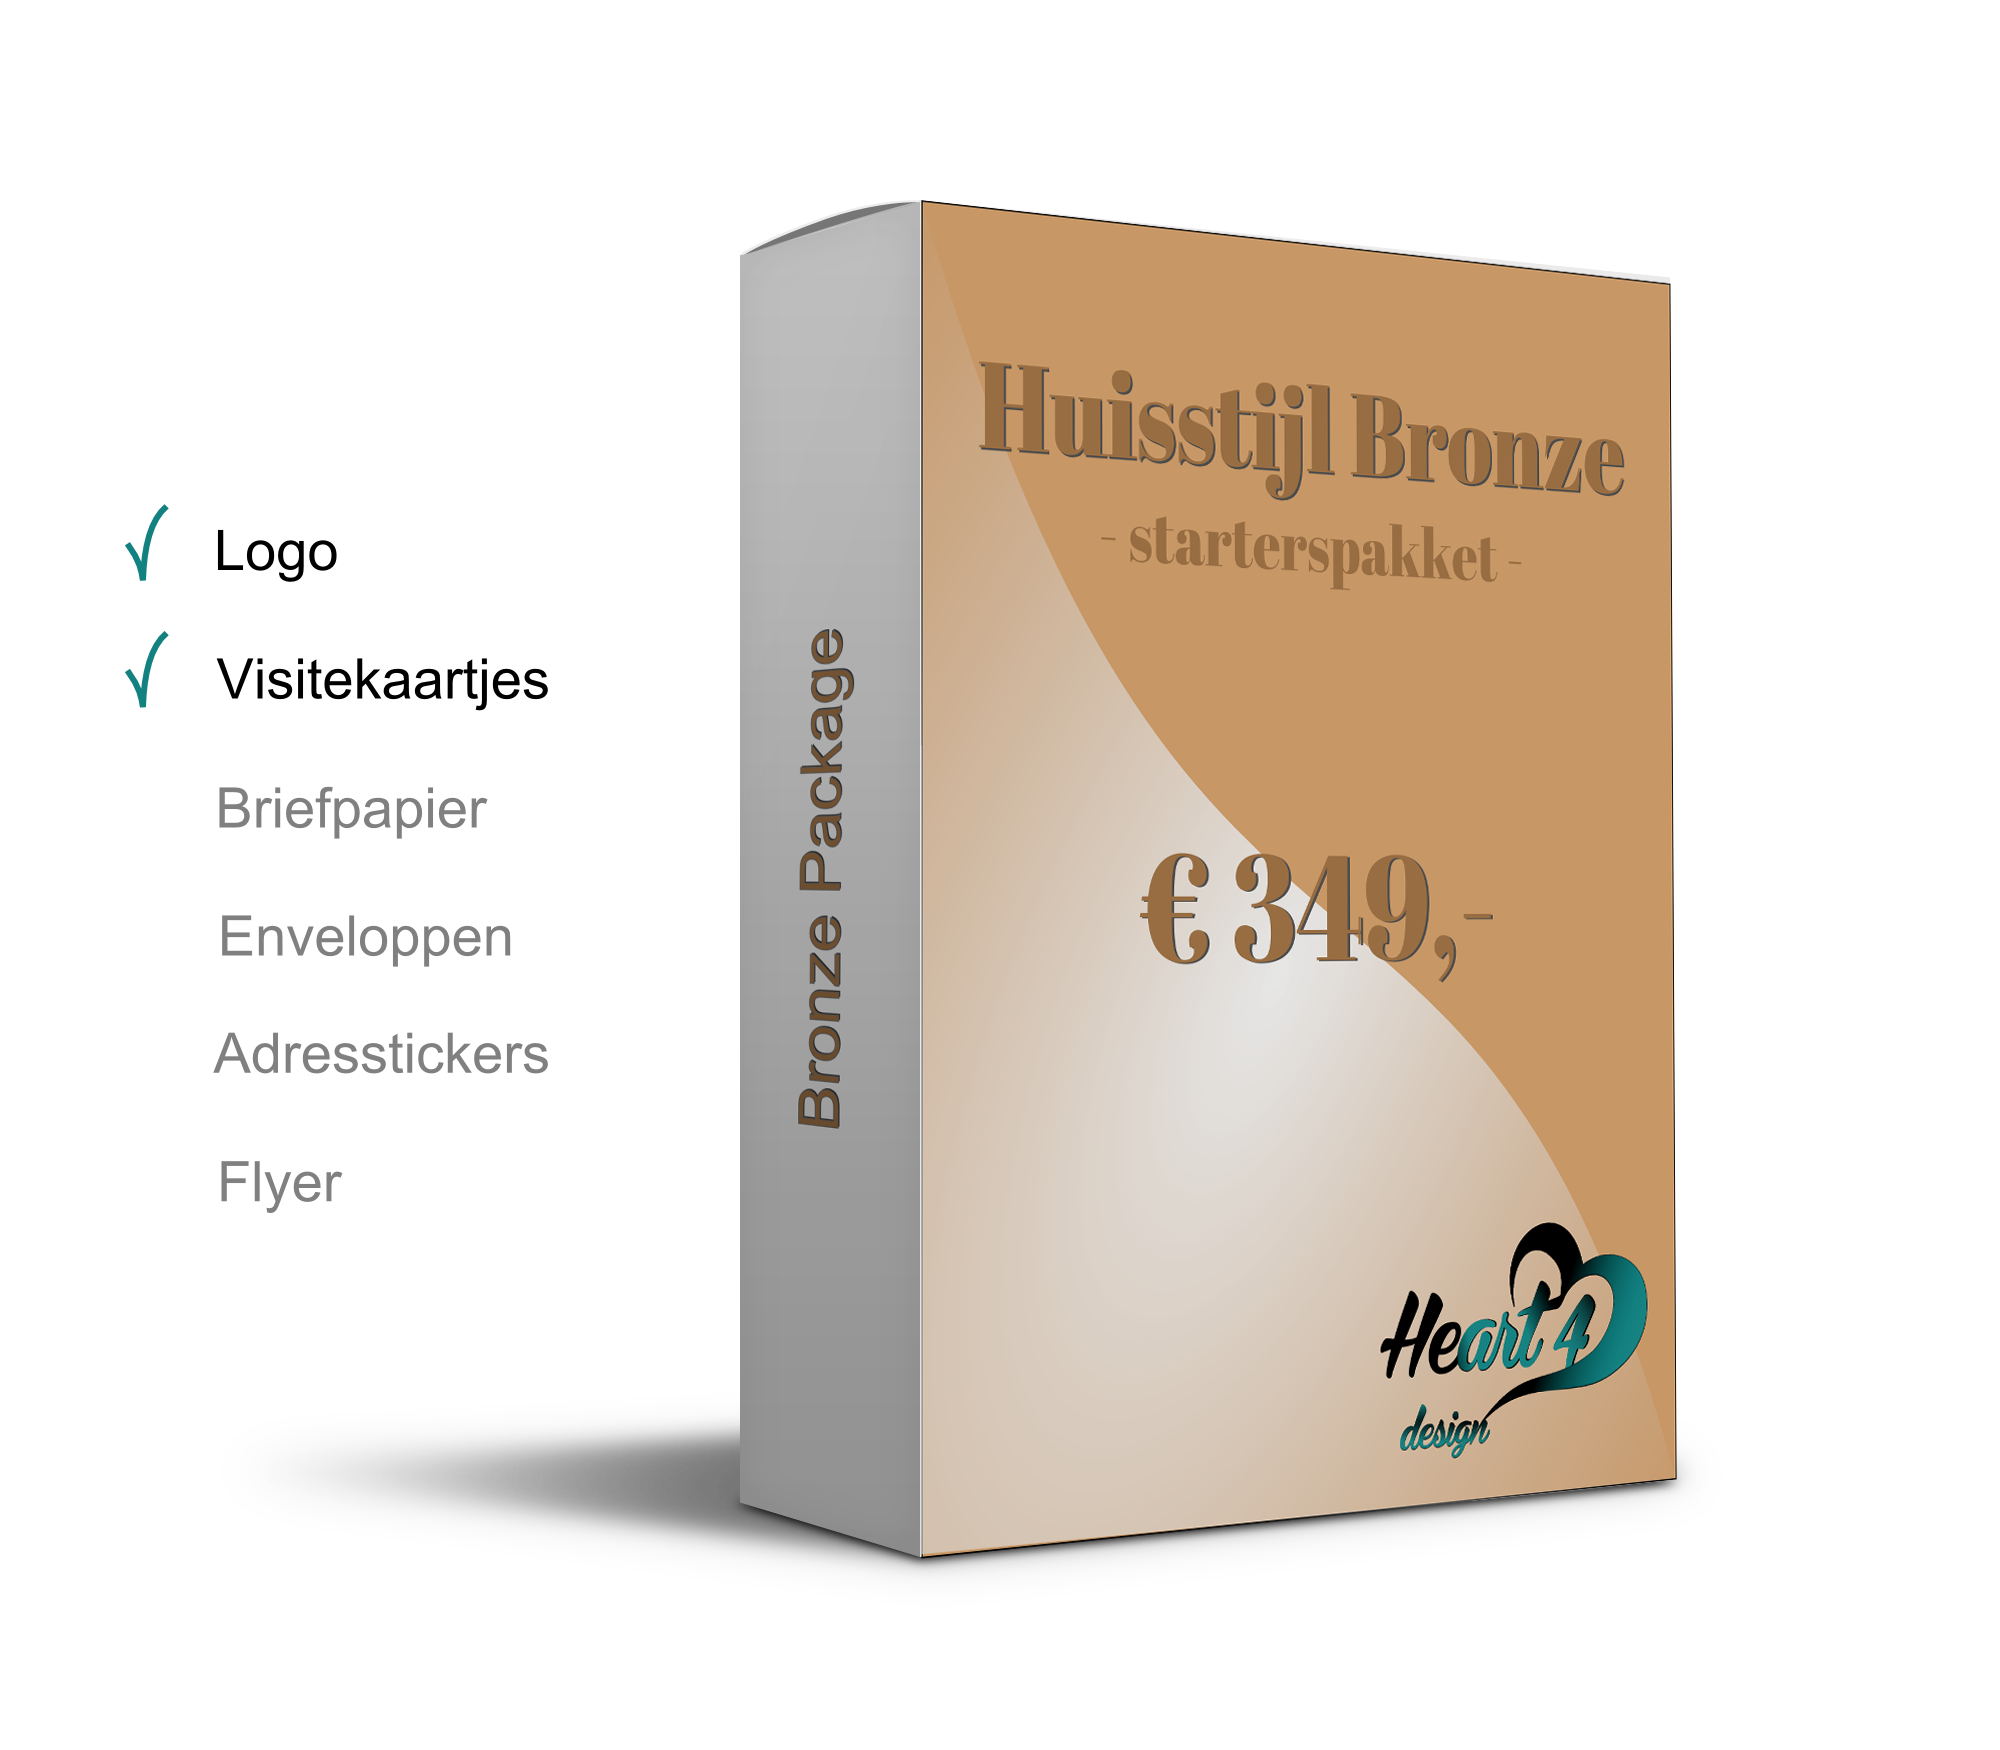 Huisstijl-Bronze-starterpakket2